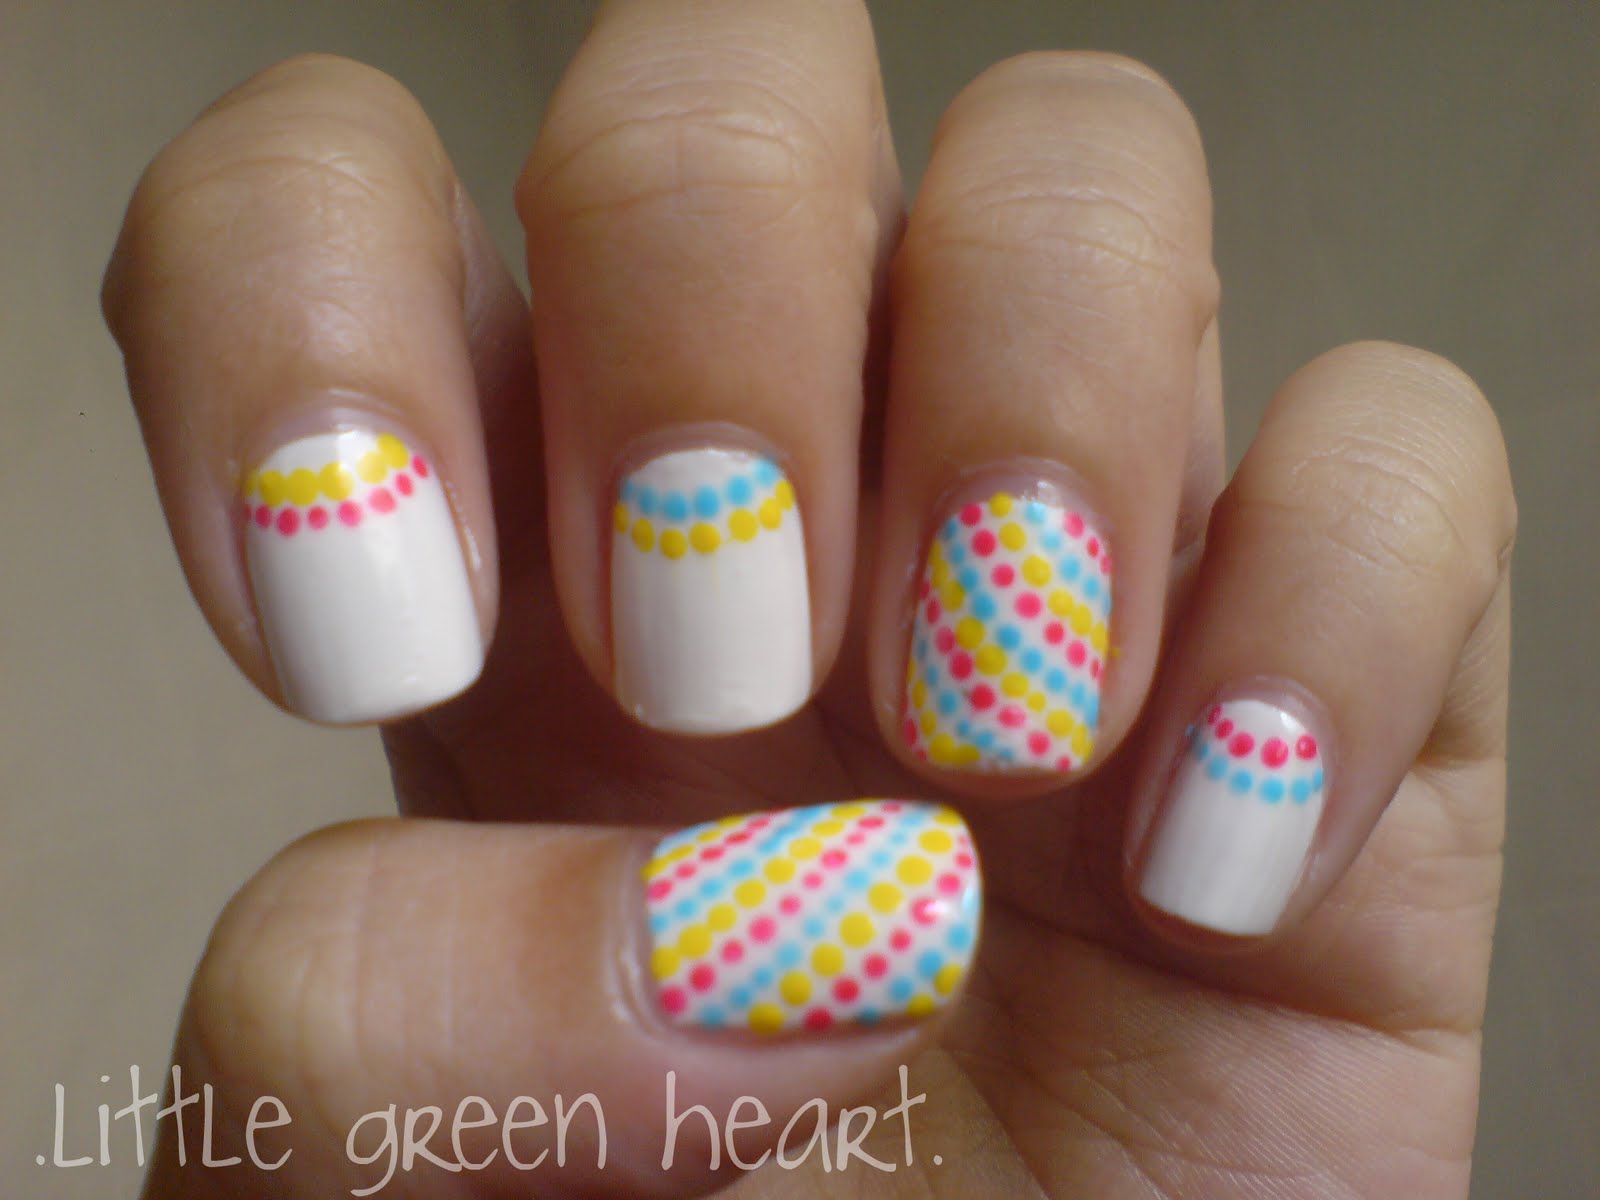 Cute Nails Designs Tumblr